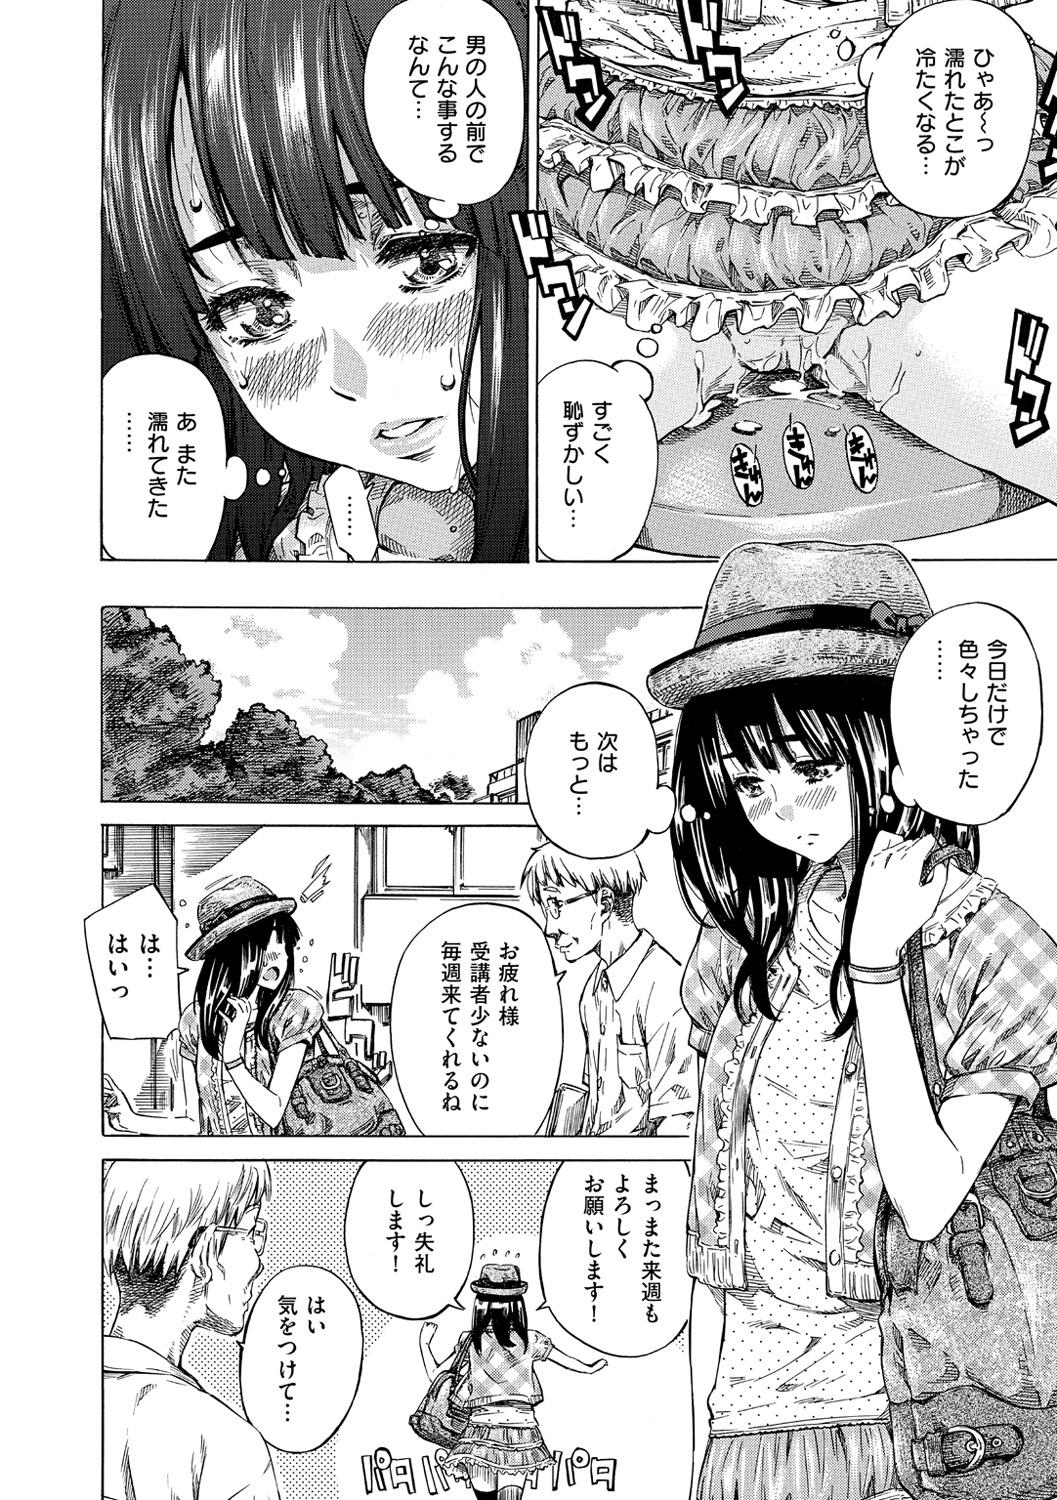 Condom Kashiwazaki Miki wa Ironna Basho de Zenra Sanpo shite mita. Selfie - Page 11